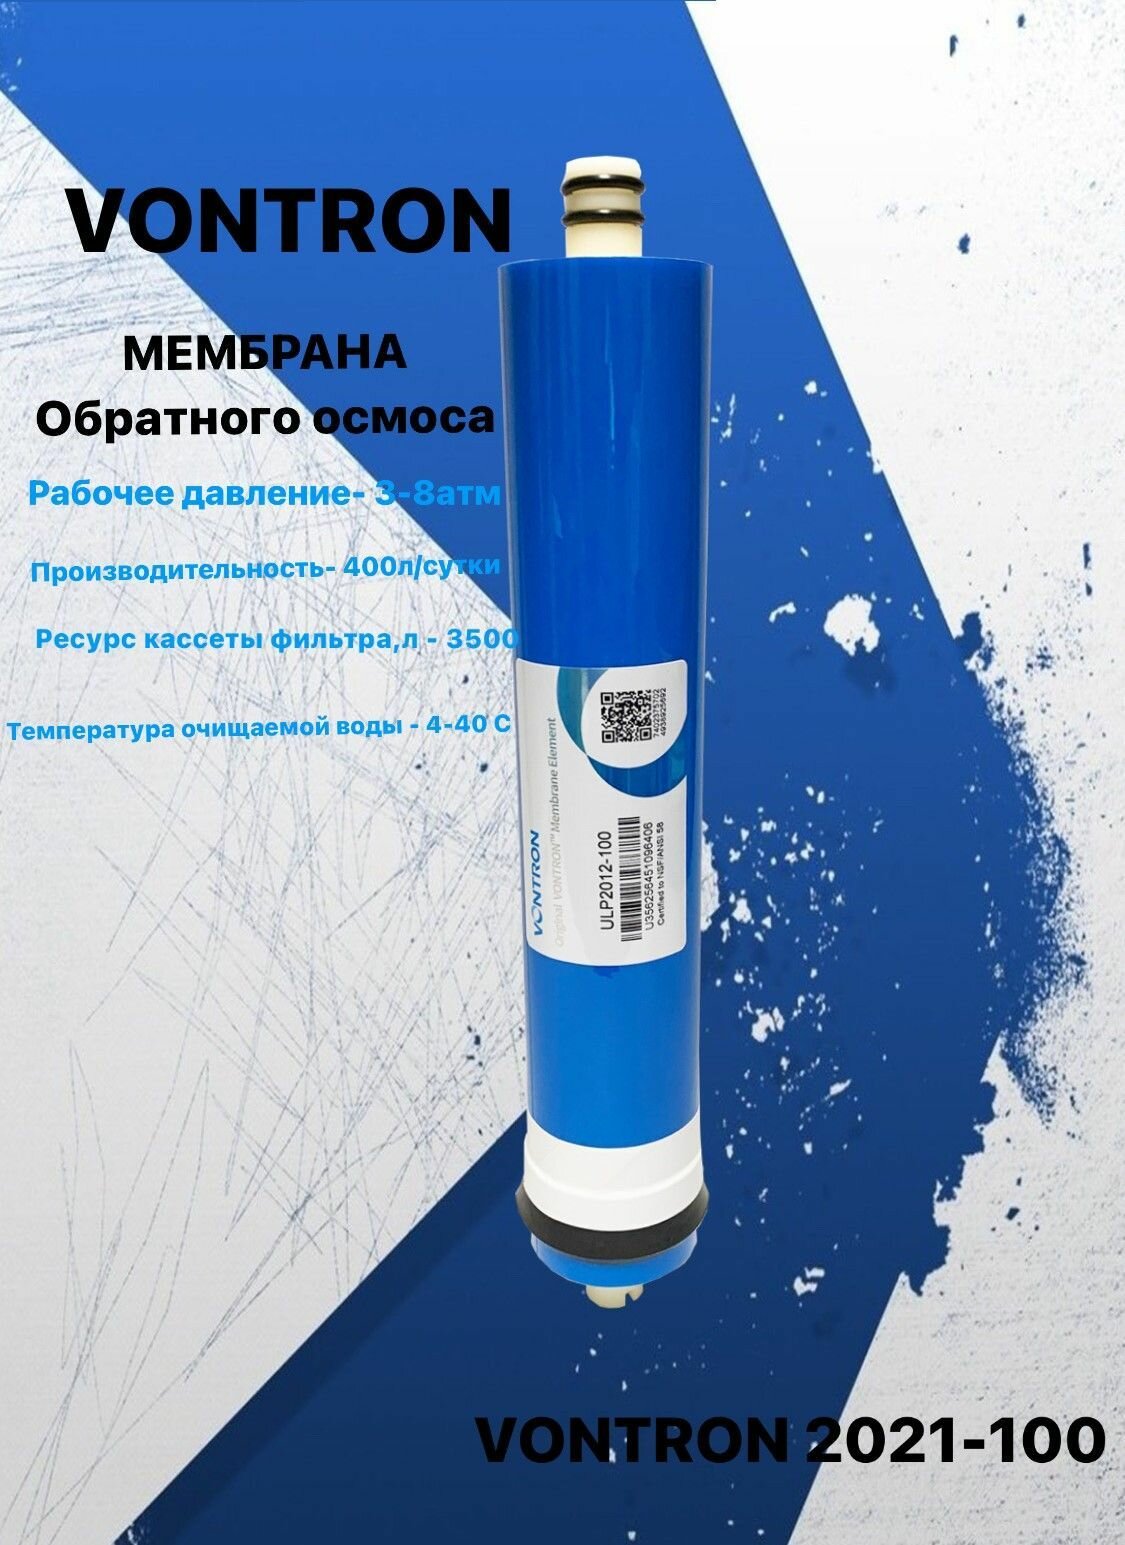 Мембрана для обратного осмоса и фильтров Vontron 2012-100 - аквабрайт